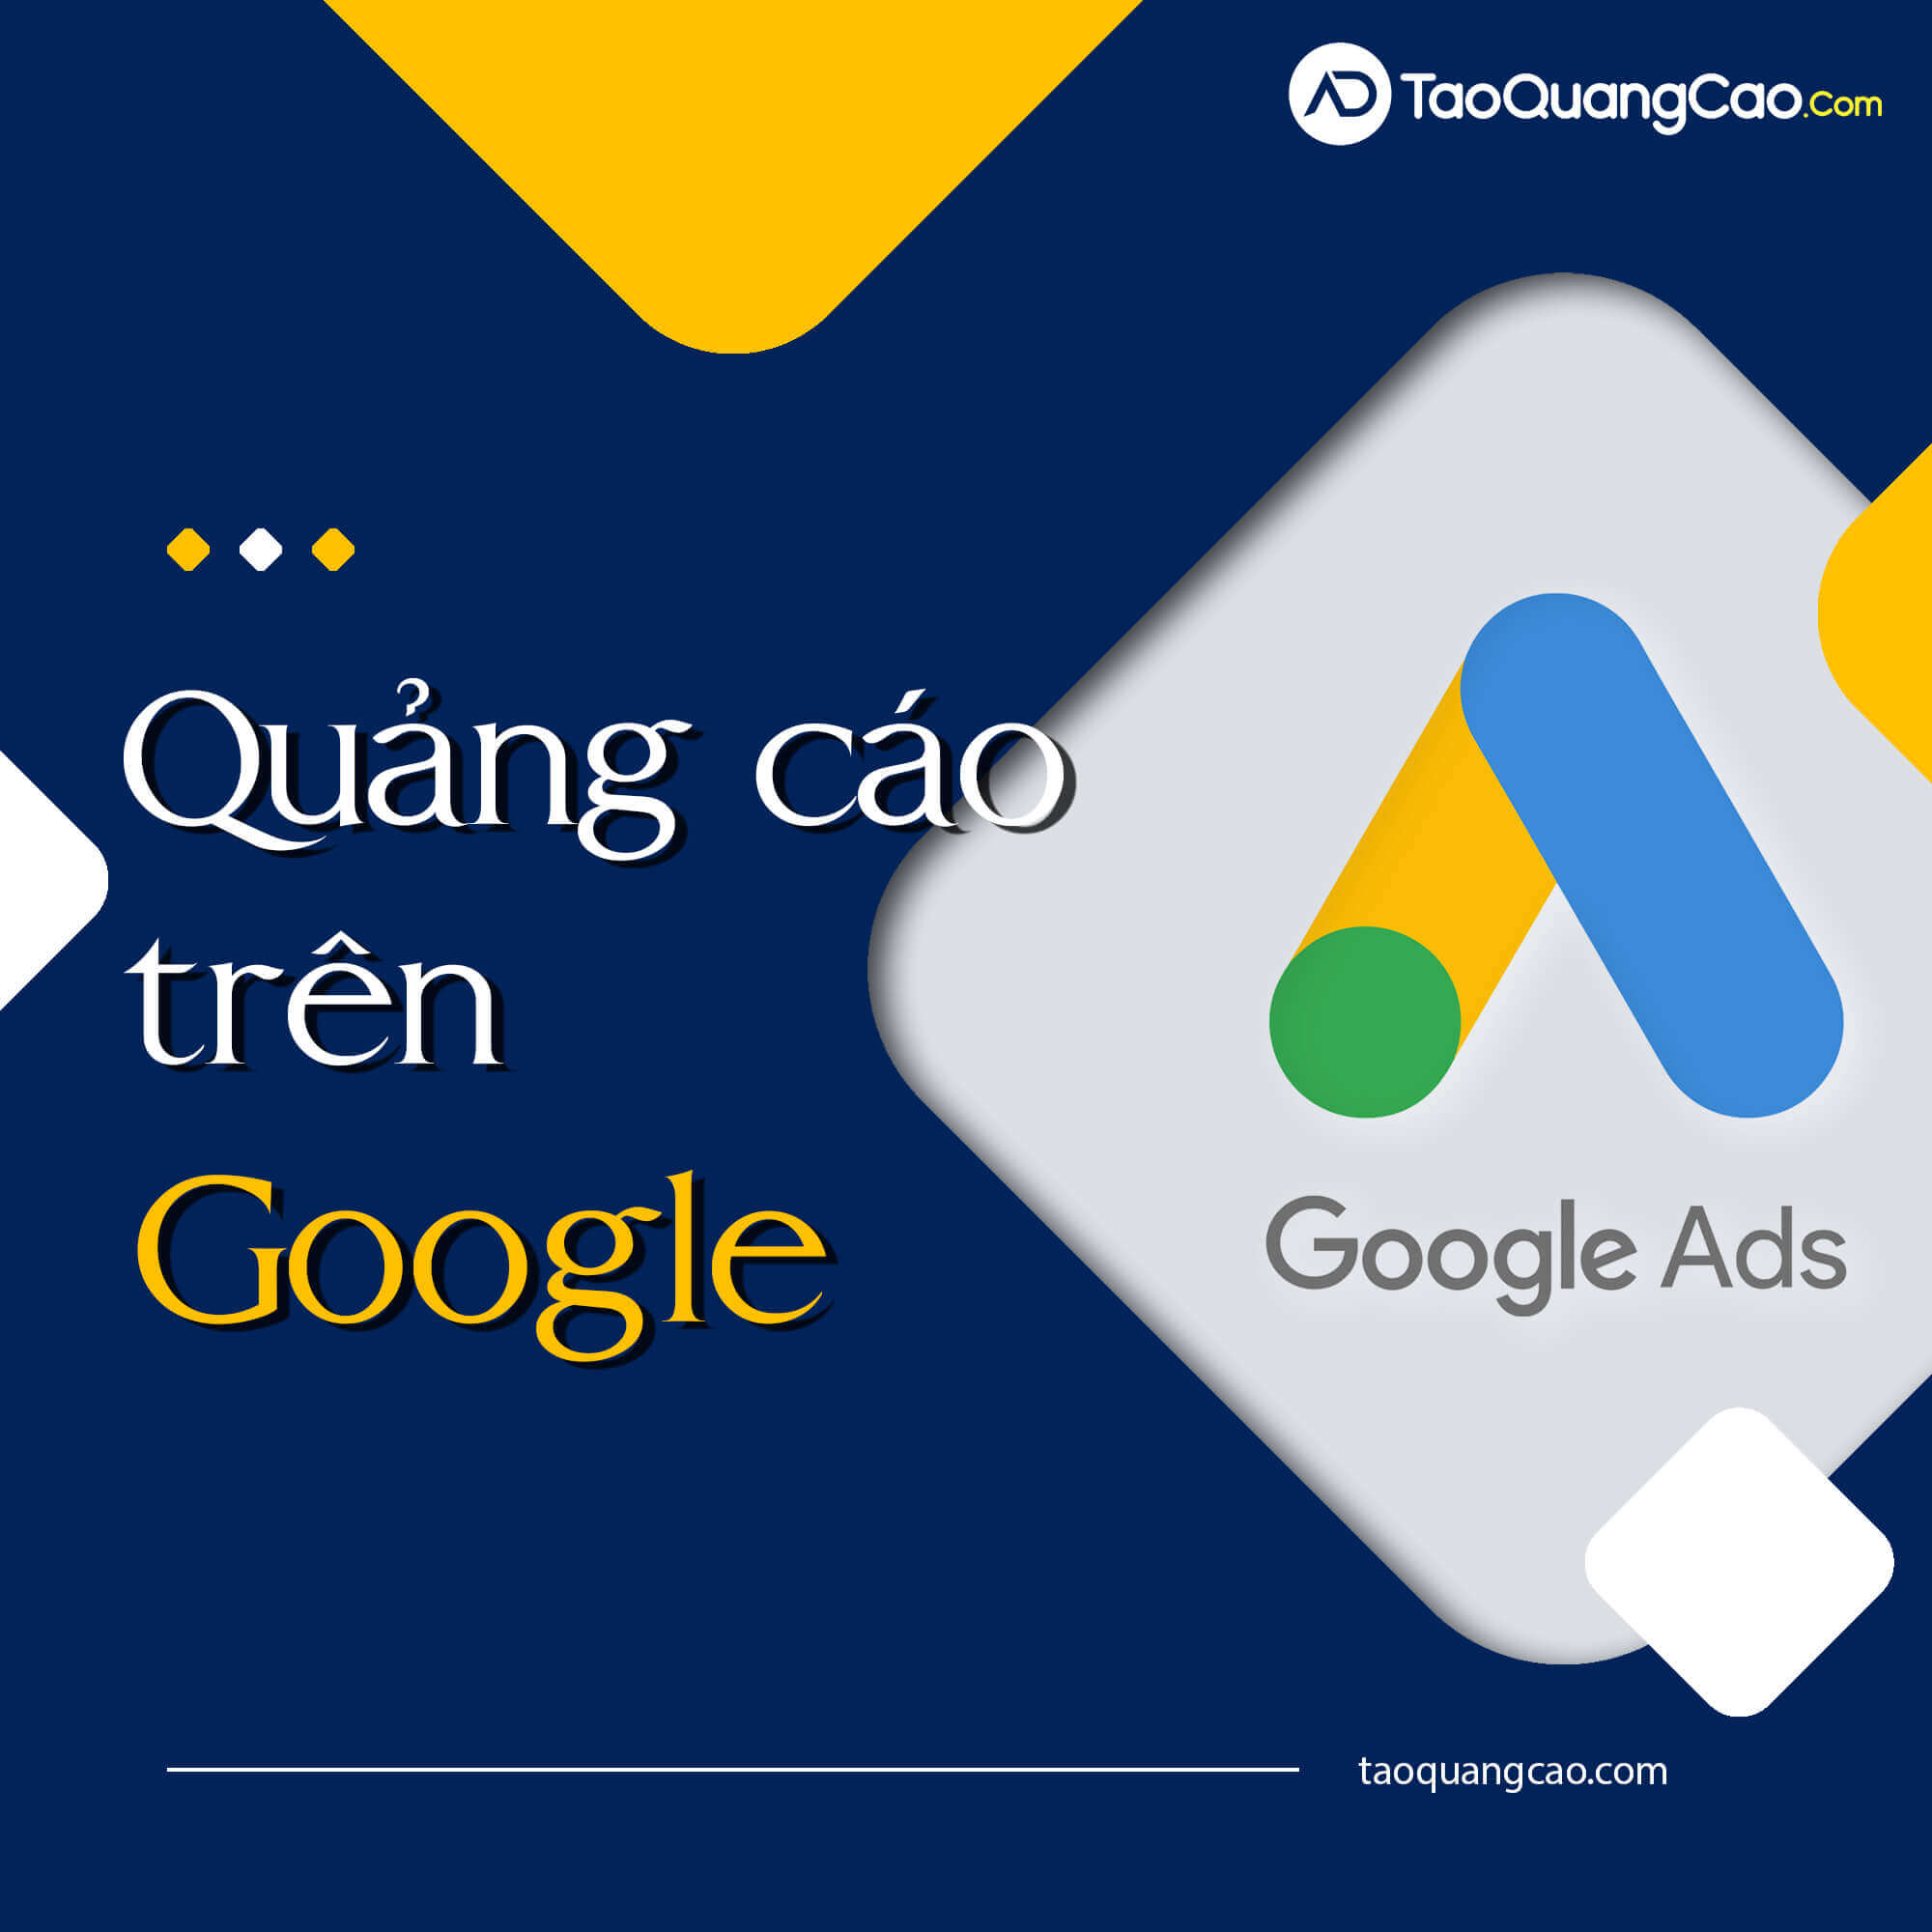 QuangCaoTrenGoogle